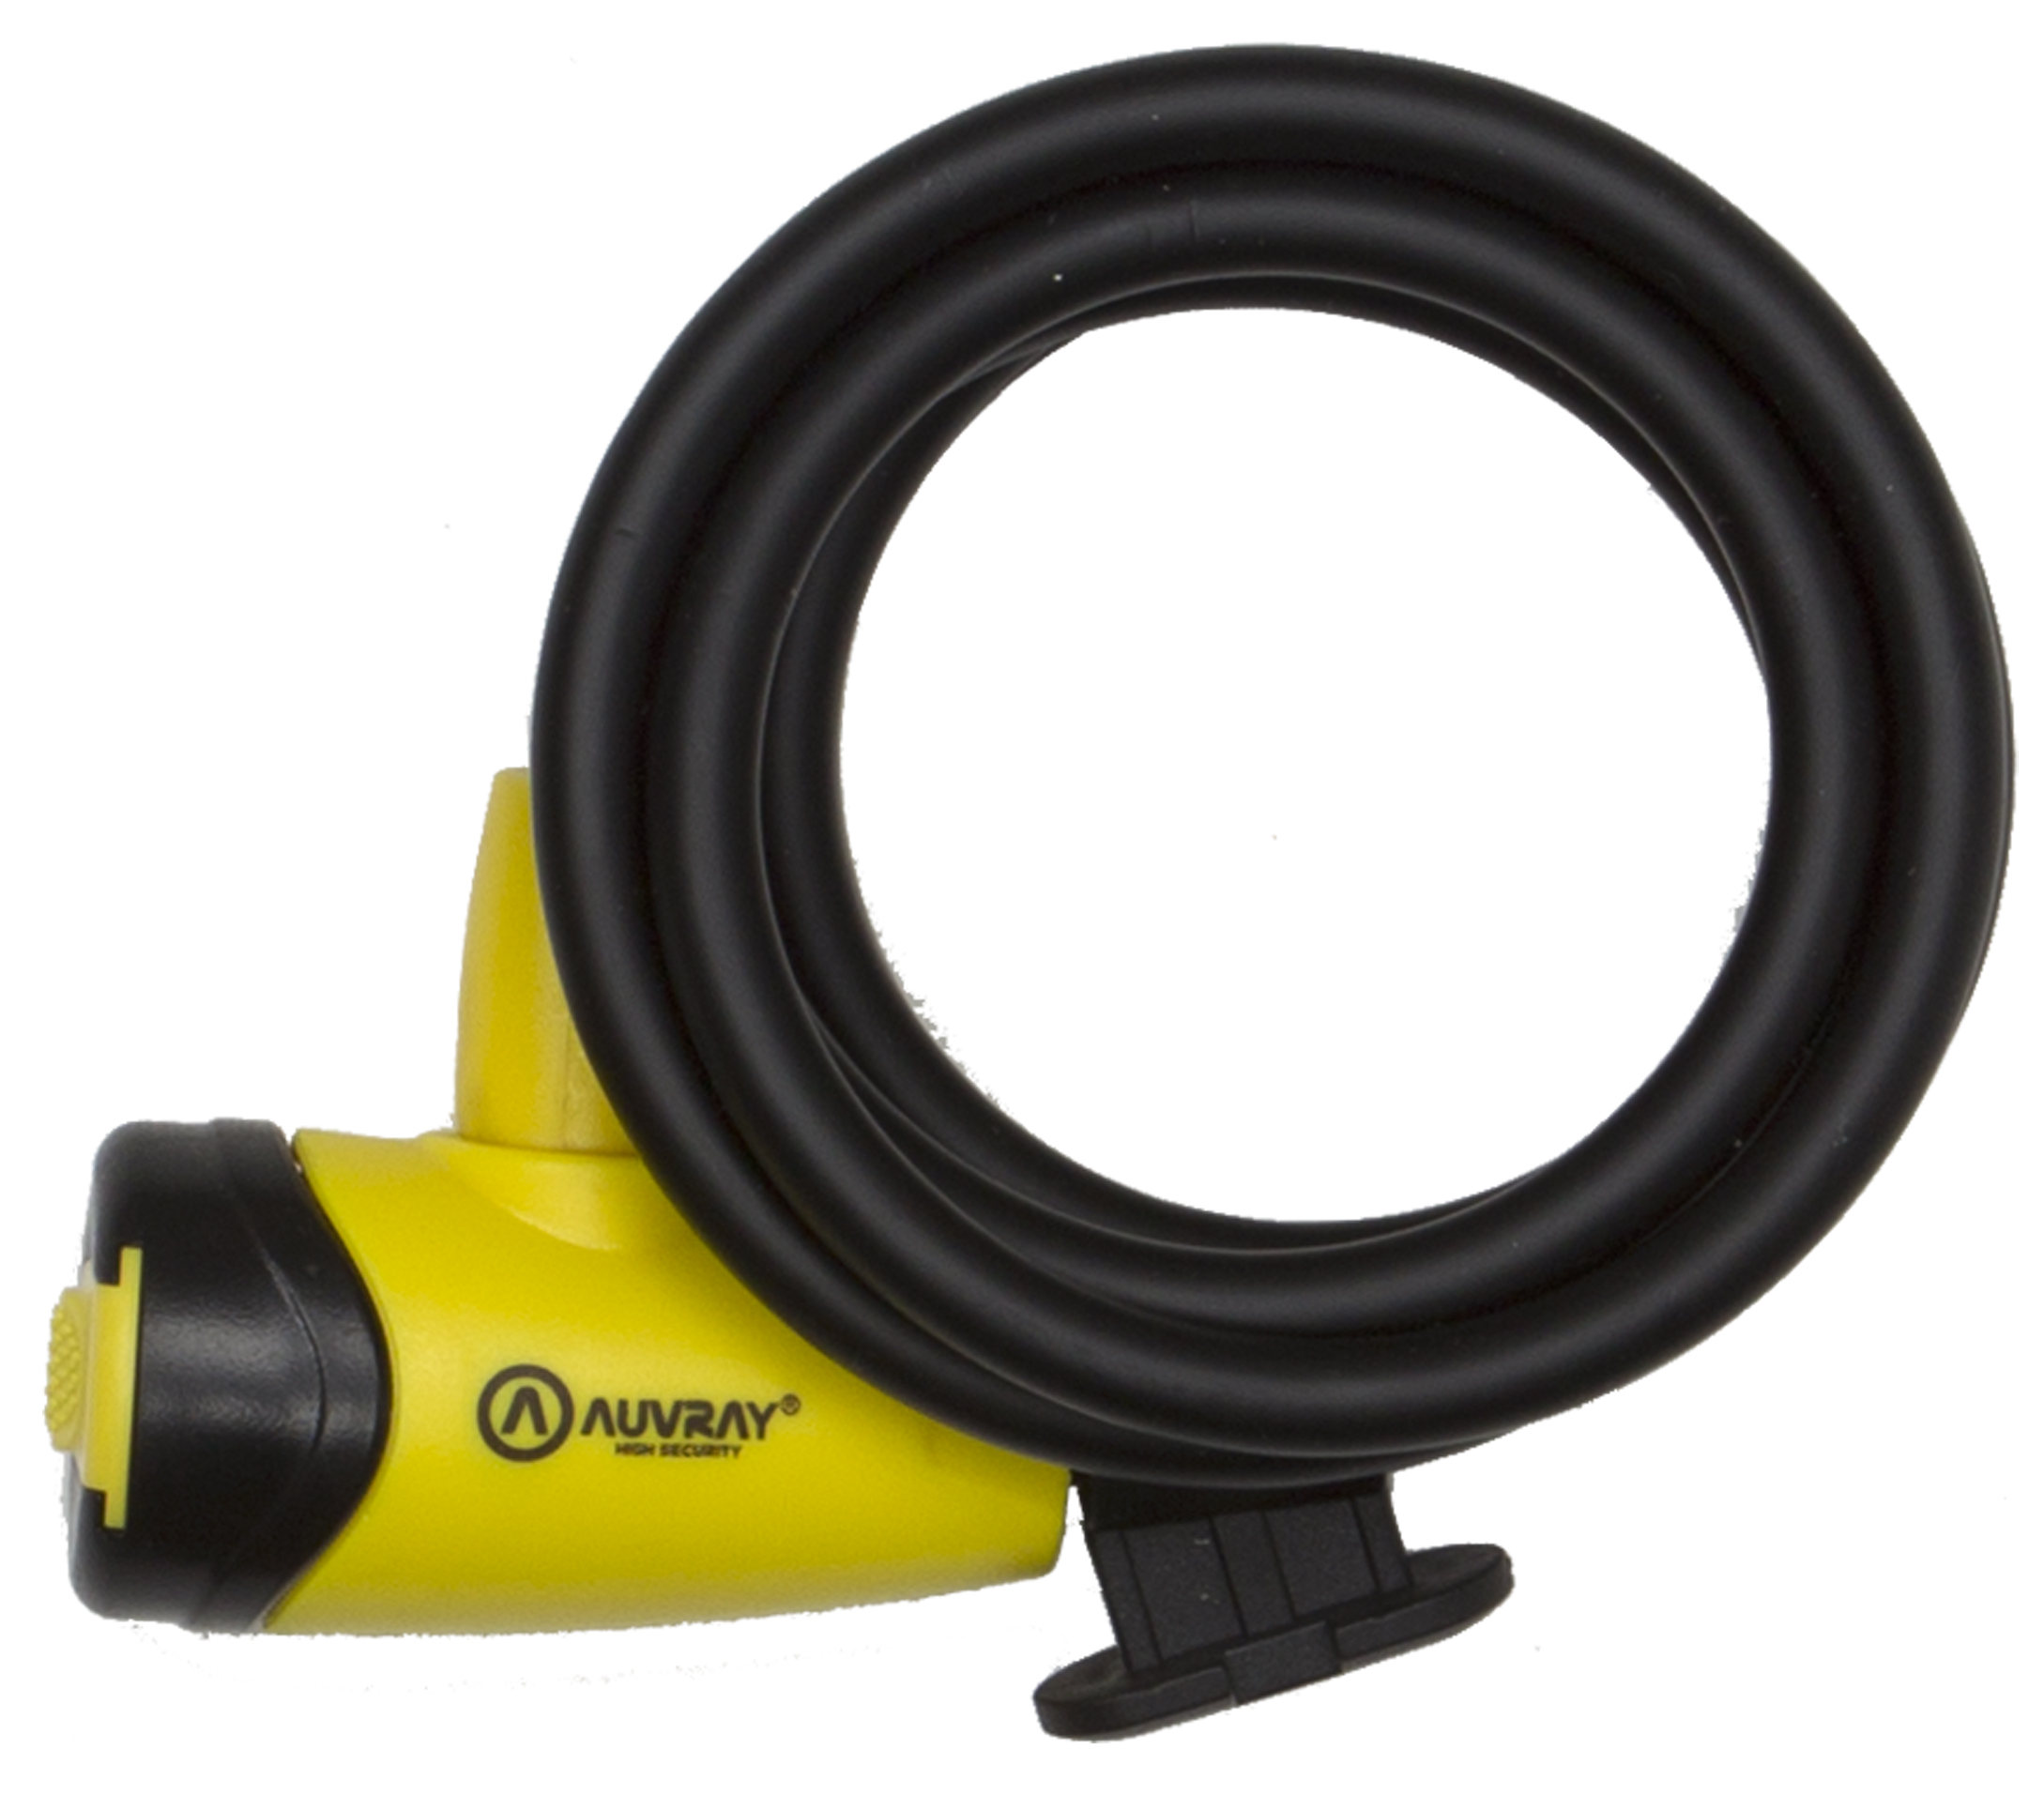 Antirrobo Auvray Espiral D.8 En 150 Cm - amarillo-negro - 